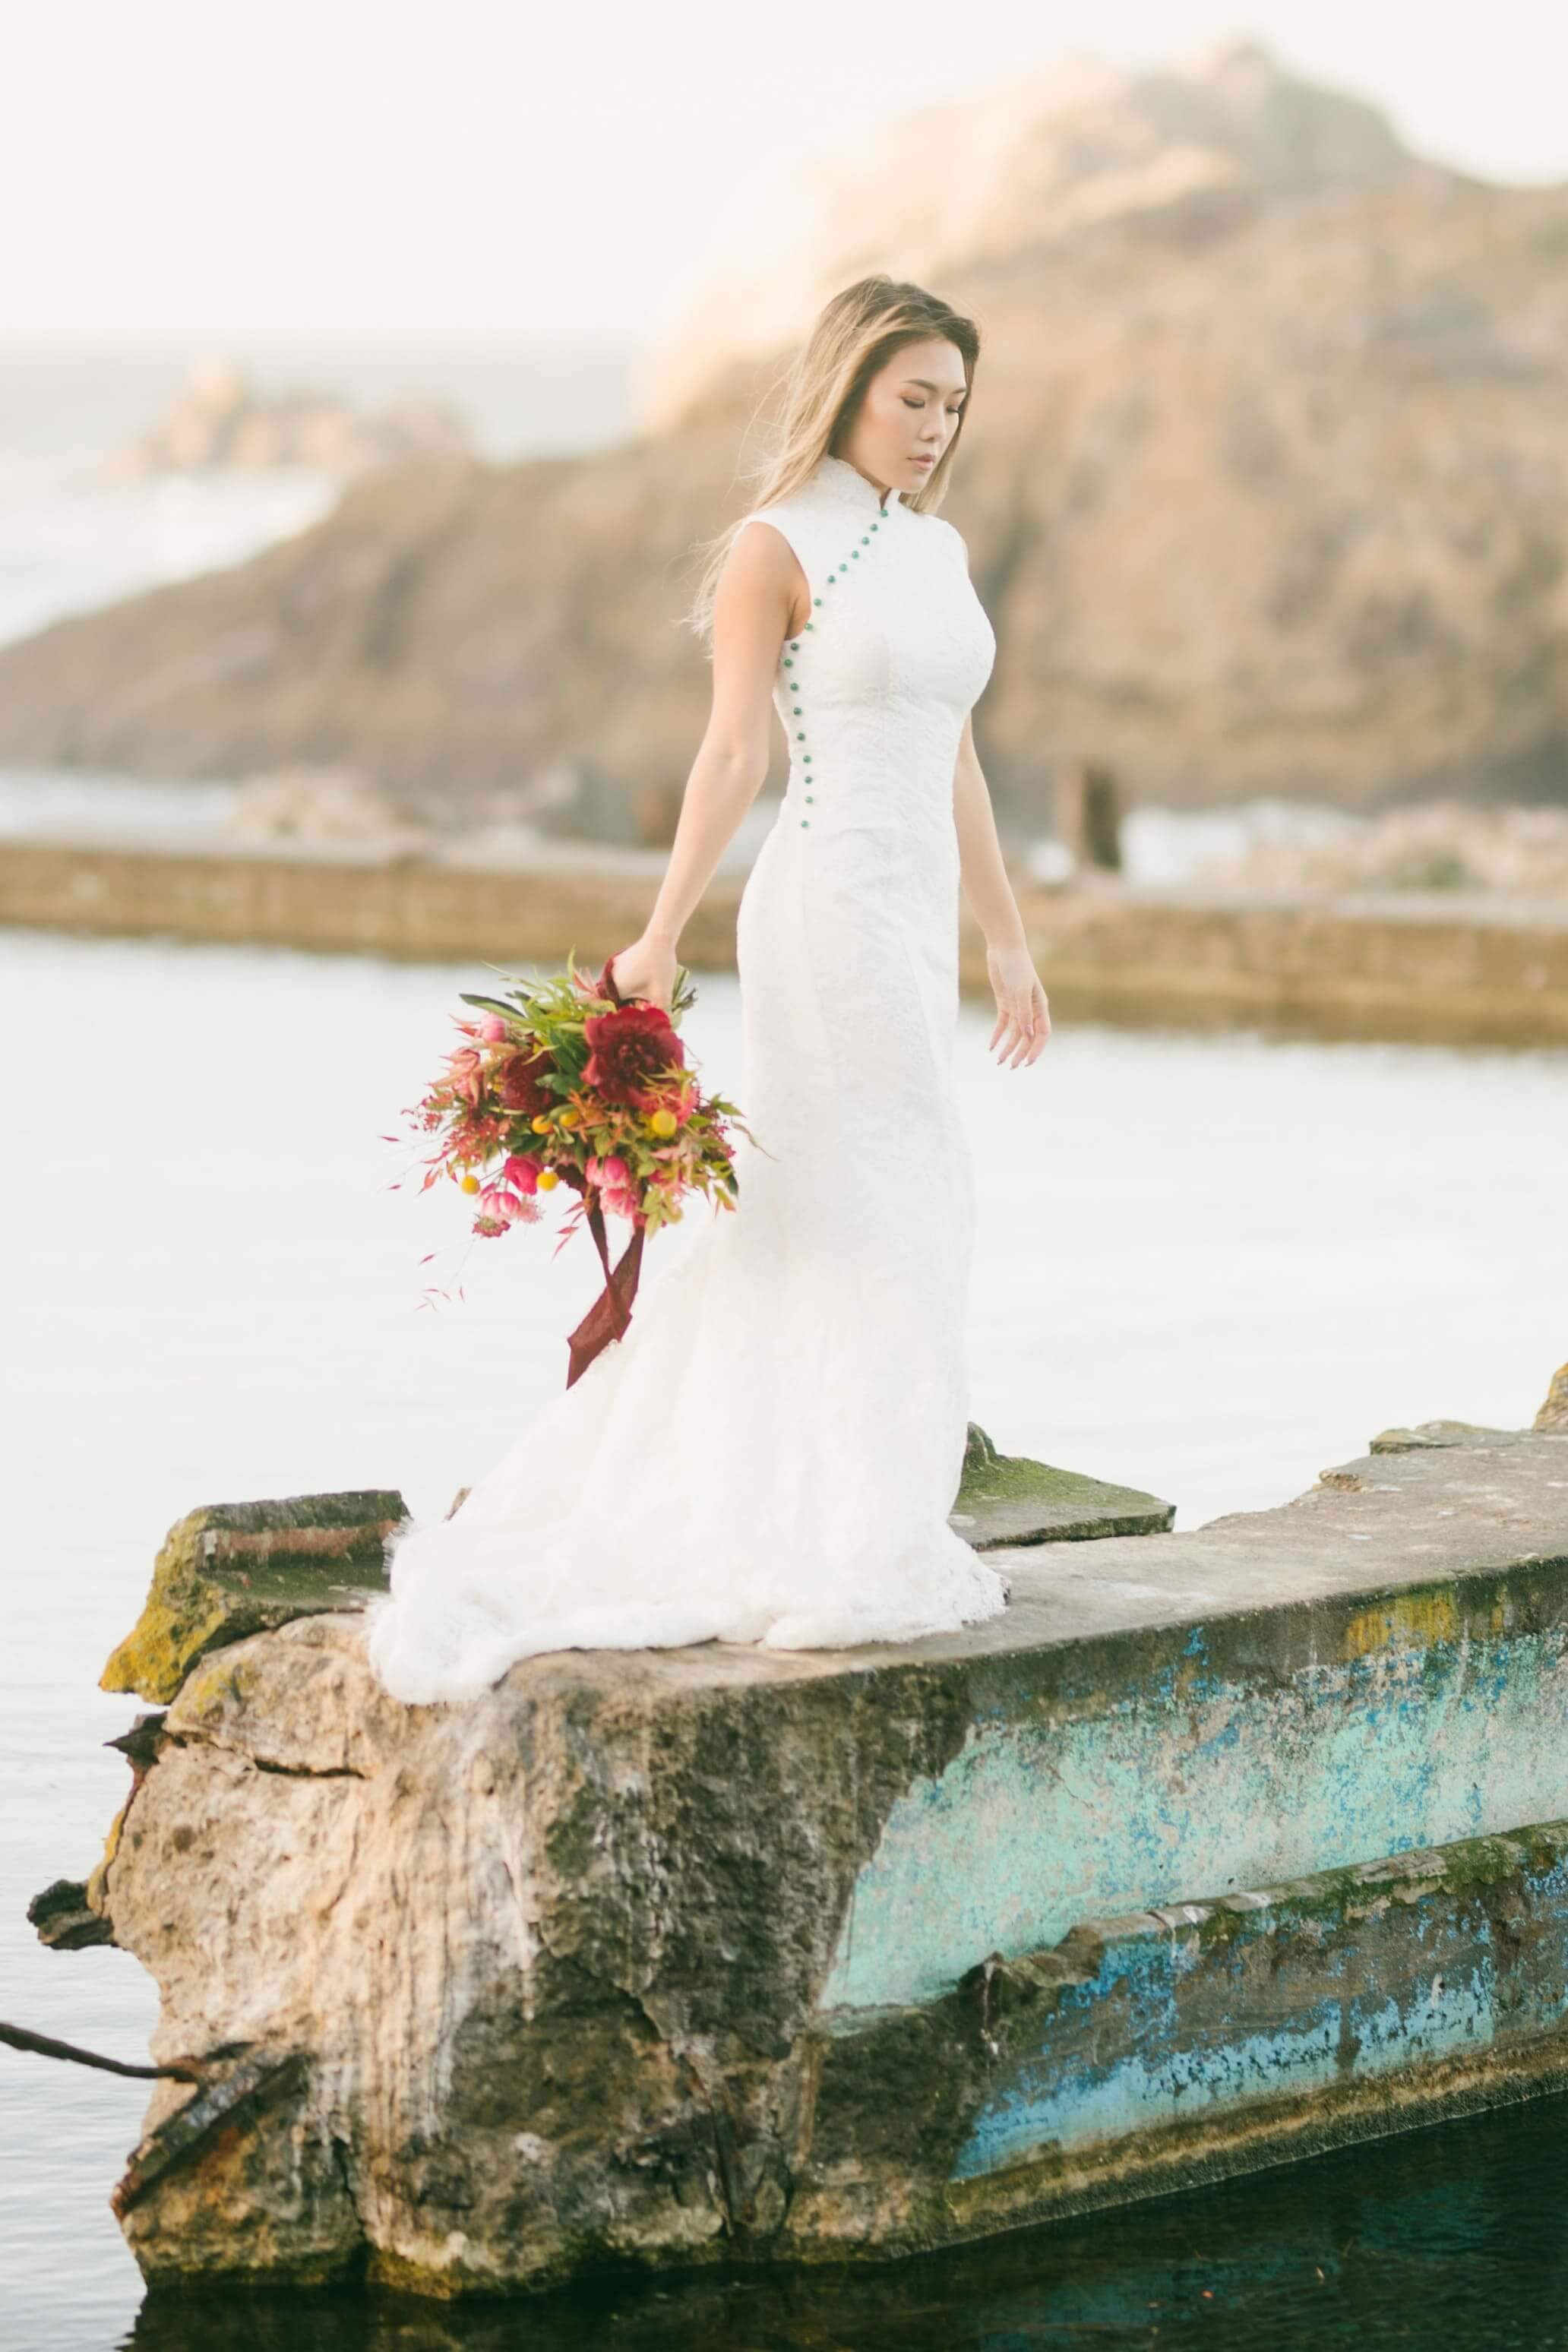 Jade Bespoke Dress [Mermaid] | White Cheongsam Wedding Dress